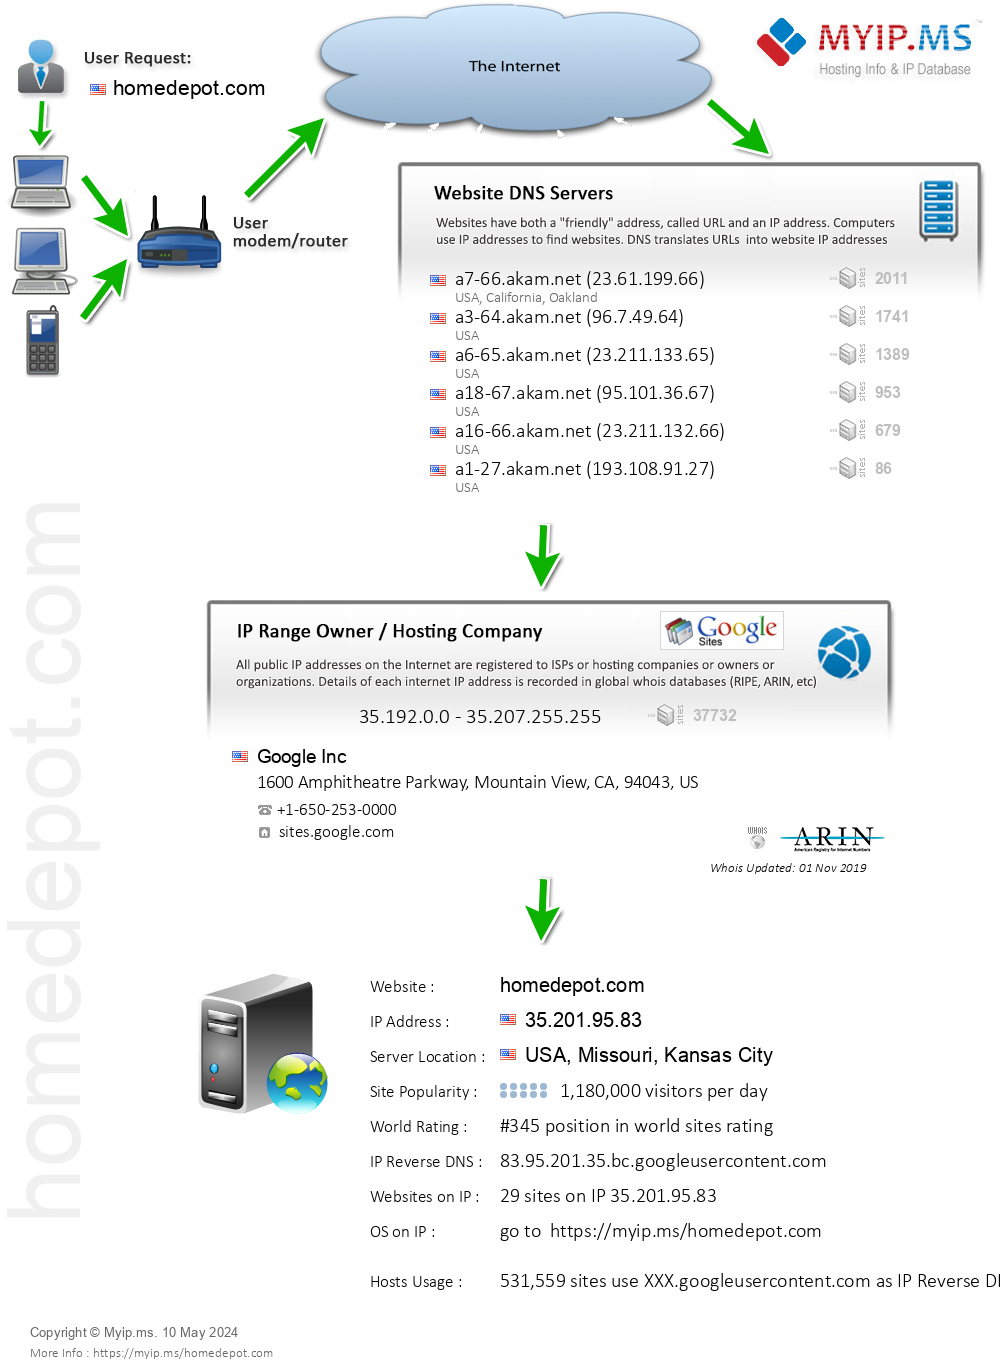 Homedepot.com - Website Hosting Visual IP Diagram